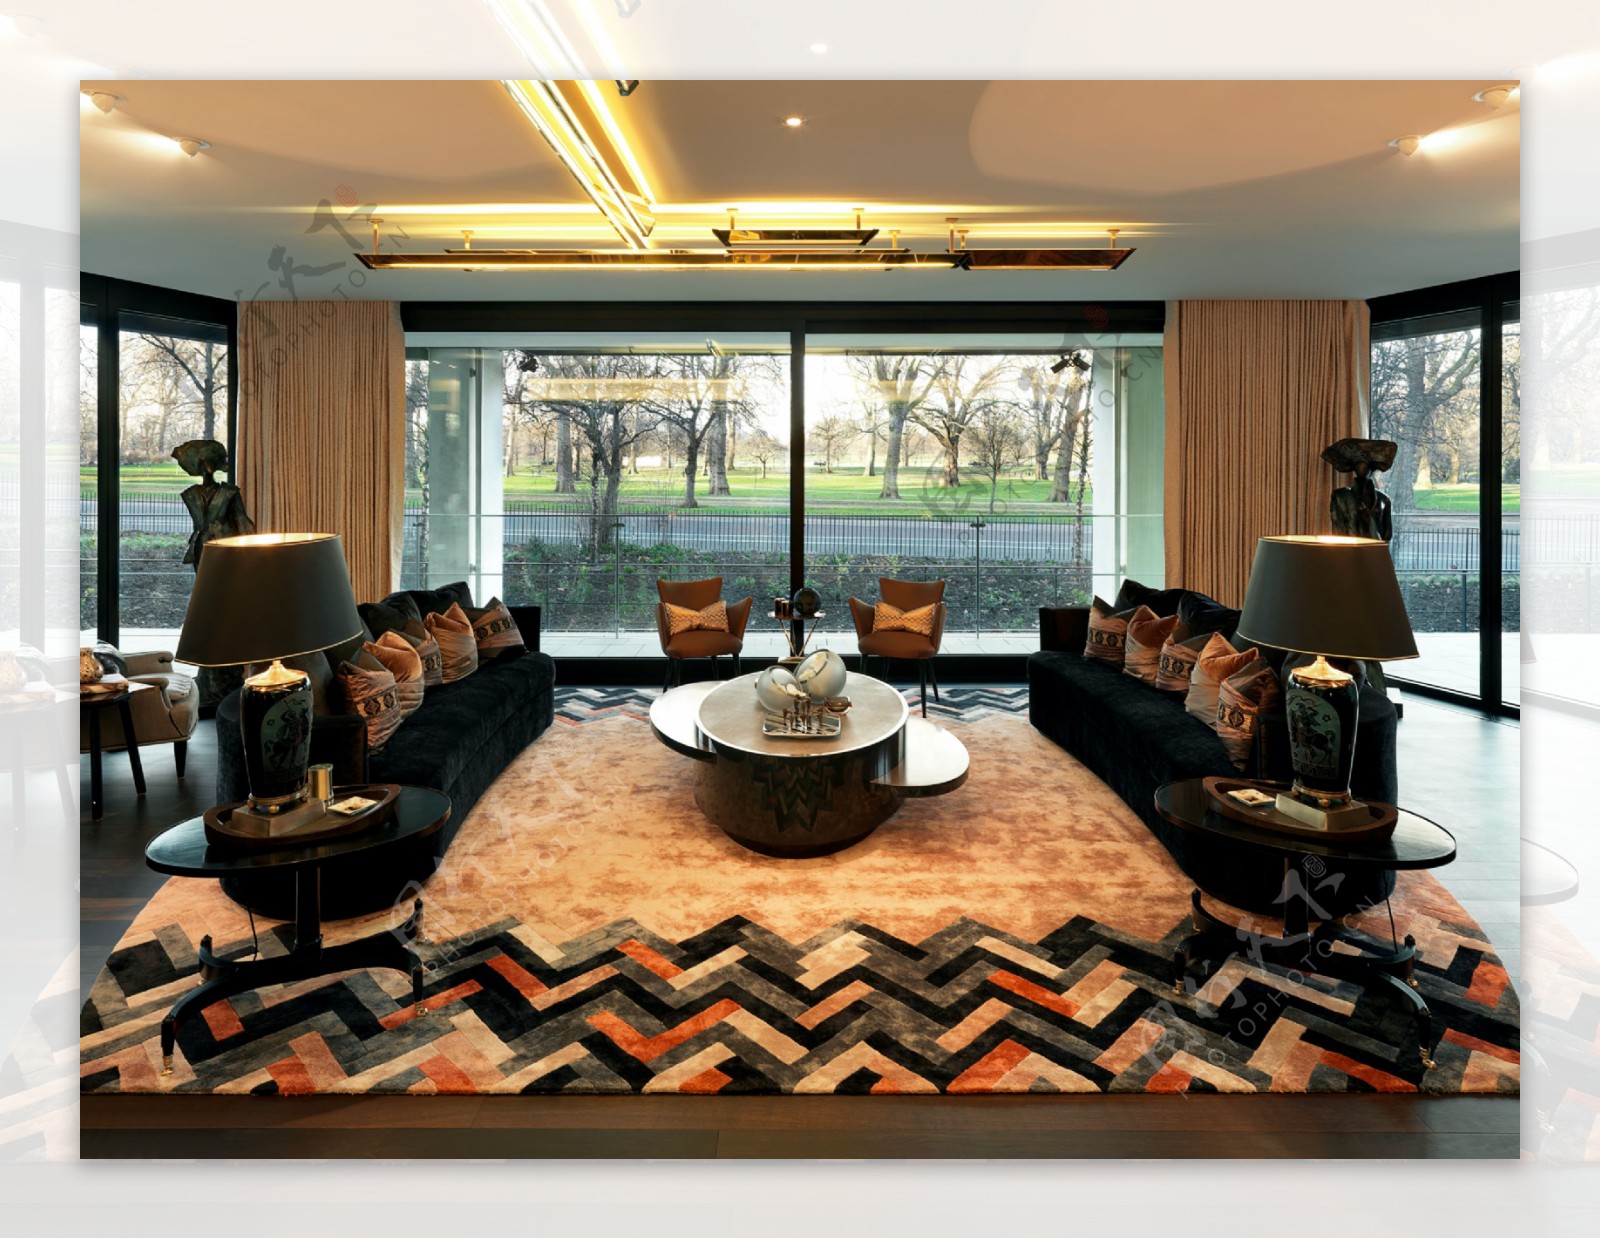 现代时尚客厅波浪纹地毯室内装修效果图